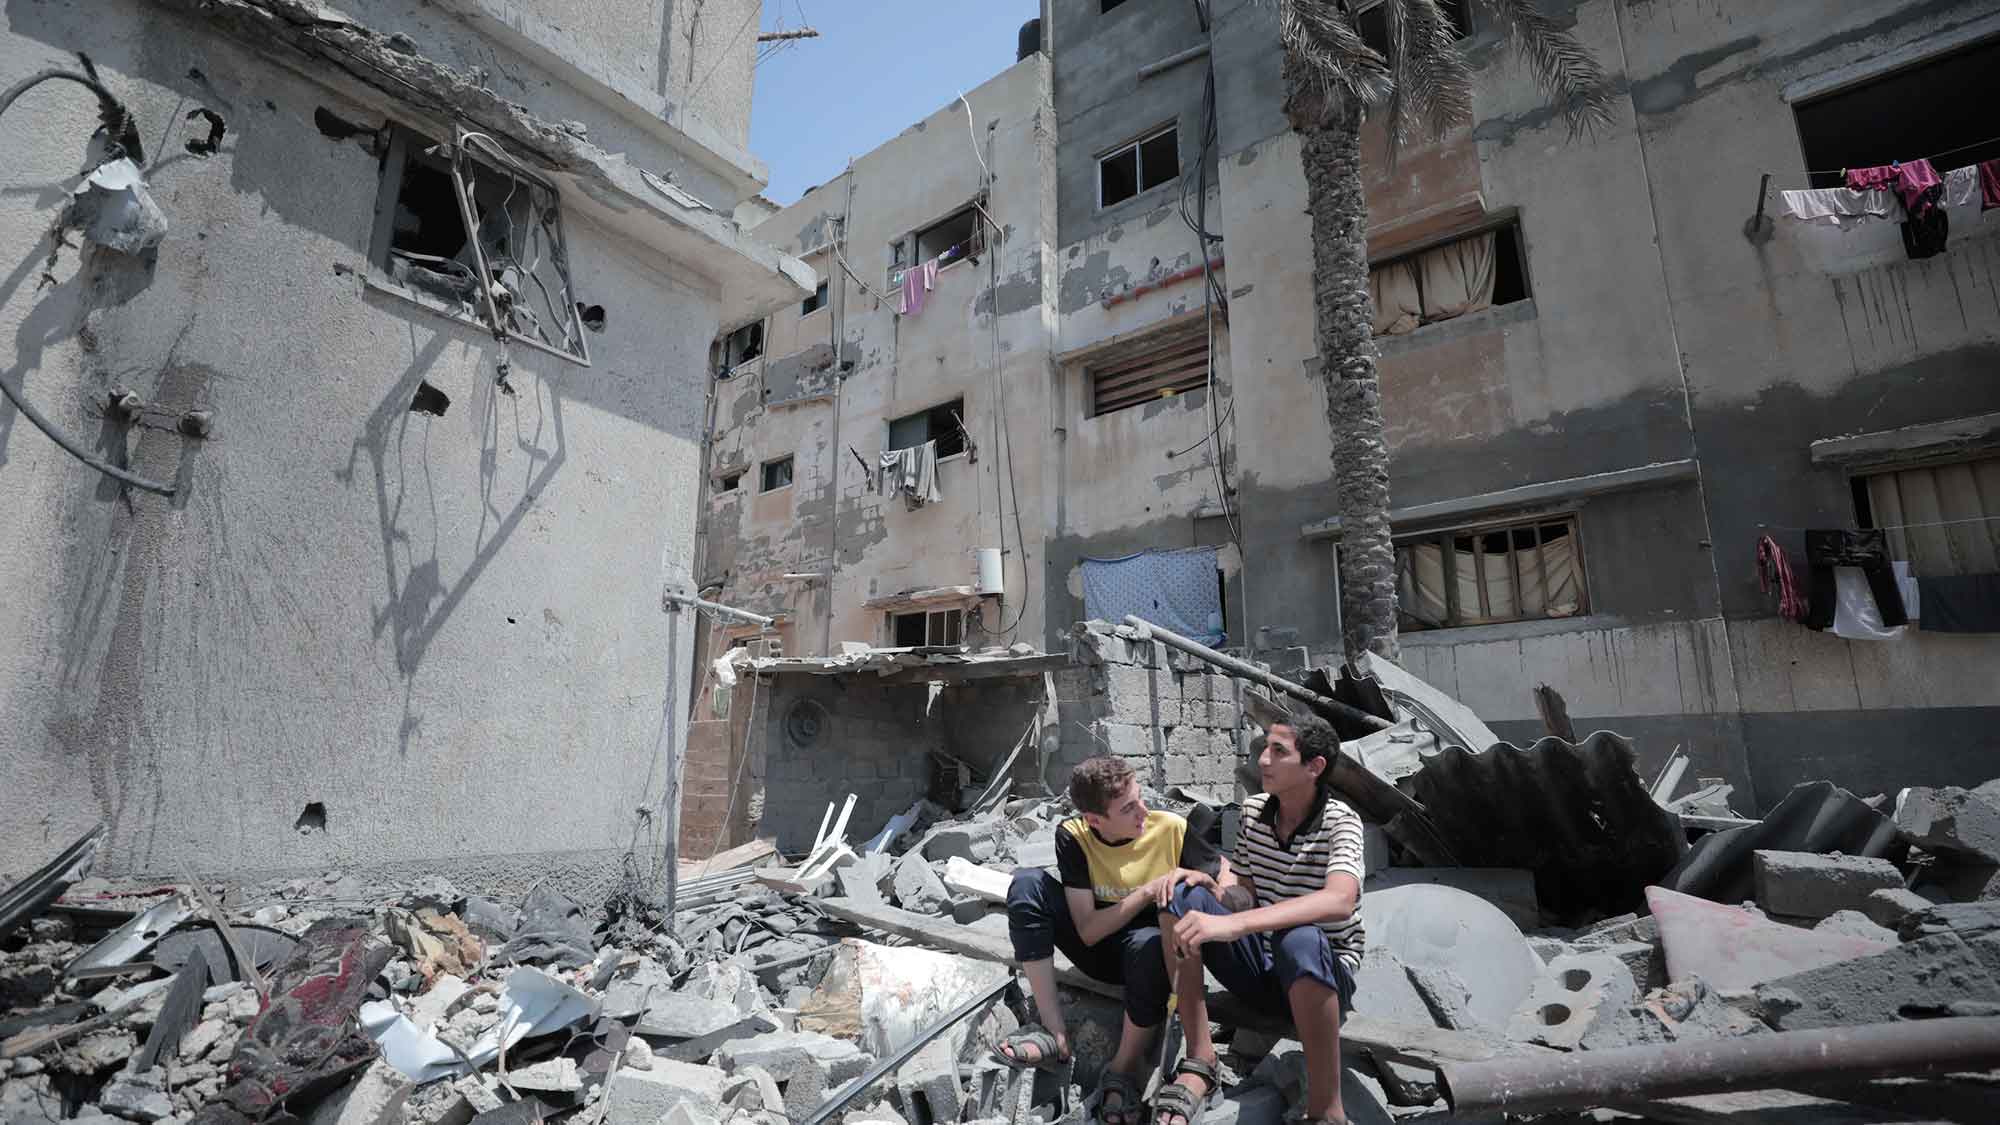 Medico International, Hilfsorganisationen: Versorgung in Gaza zusammengebrochen